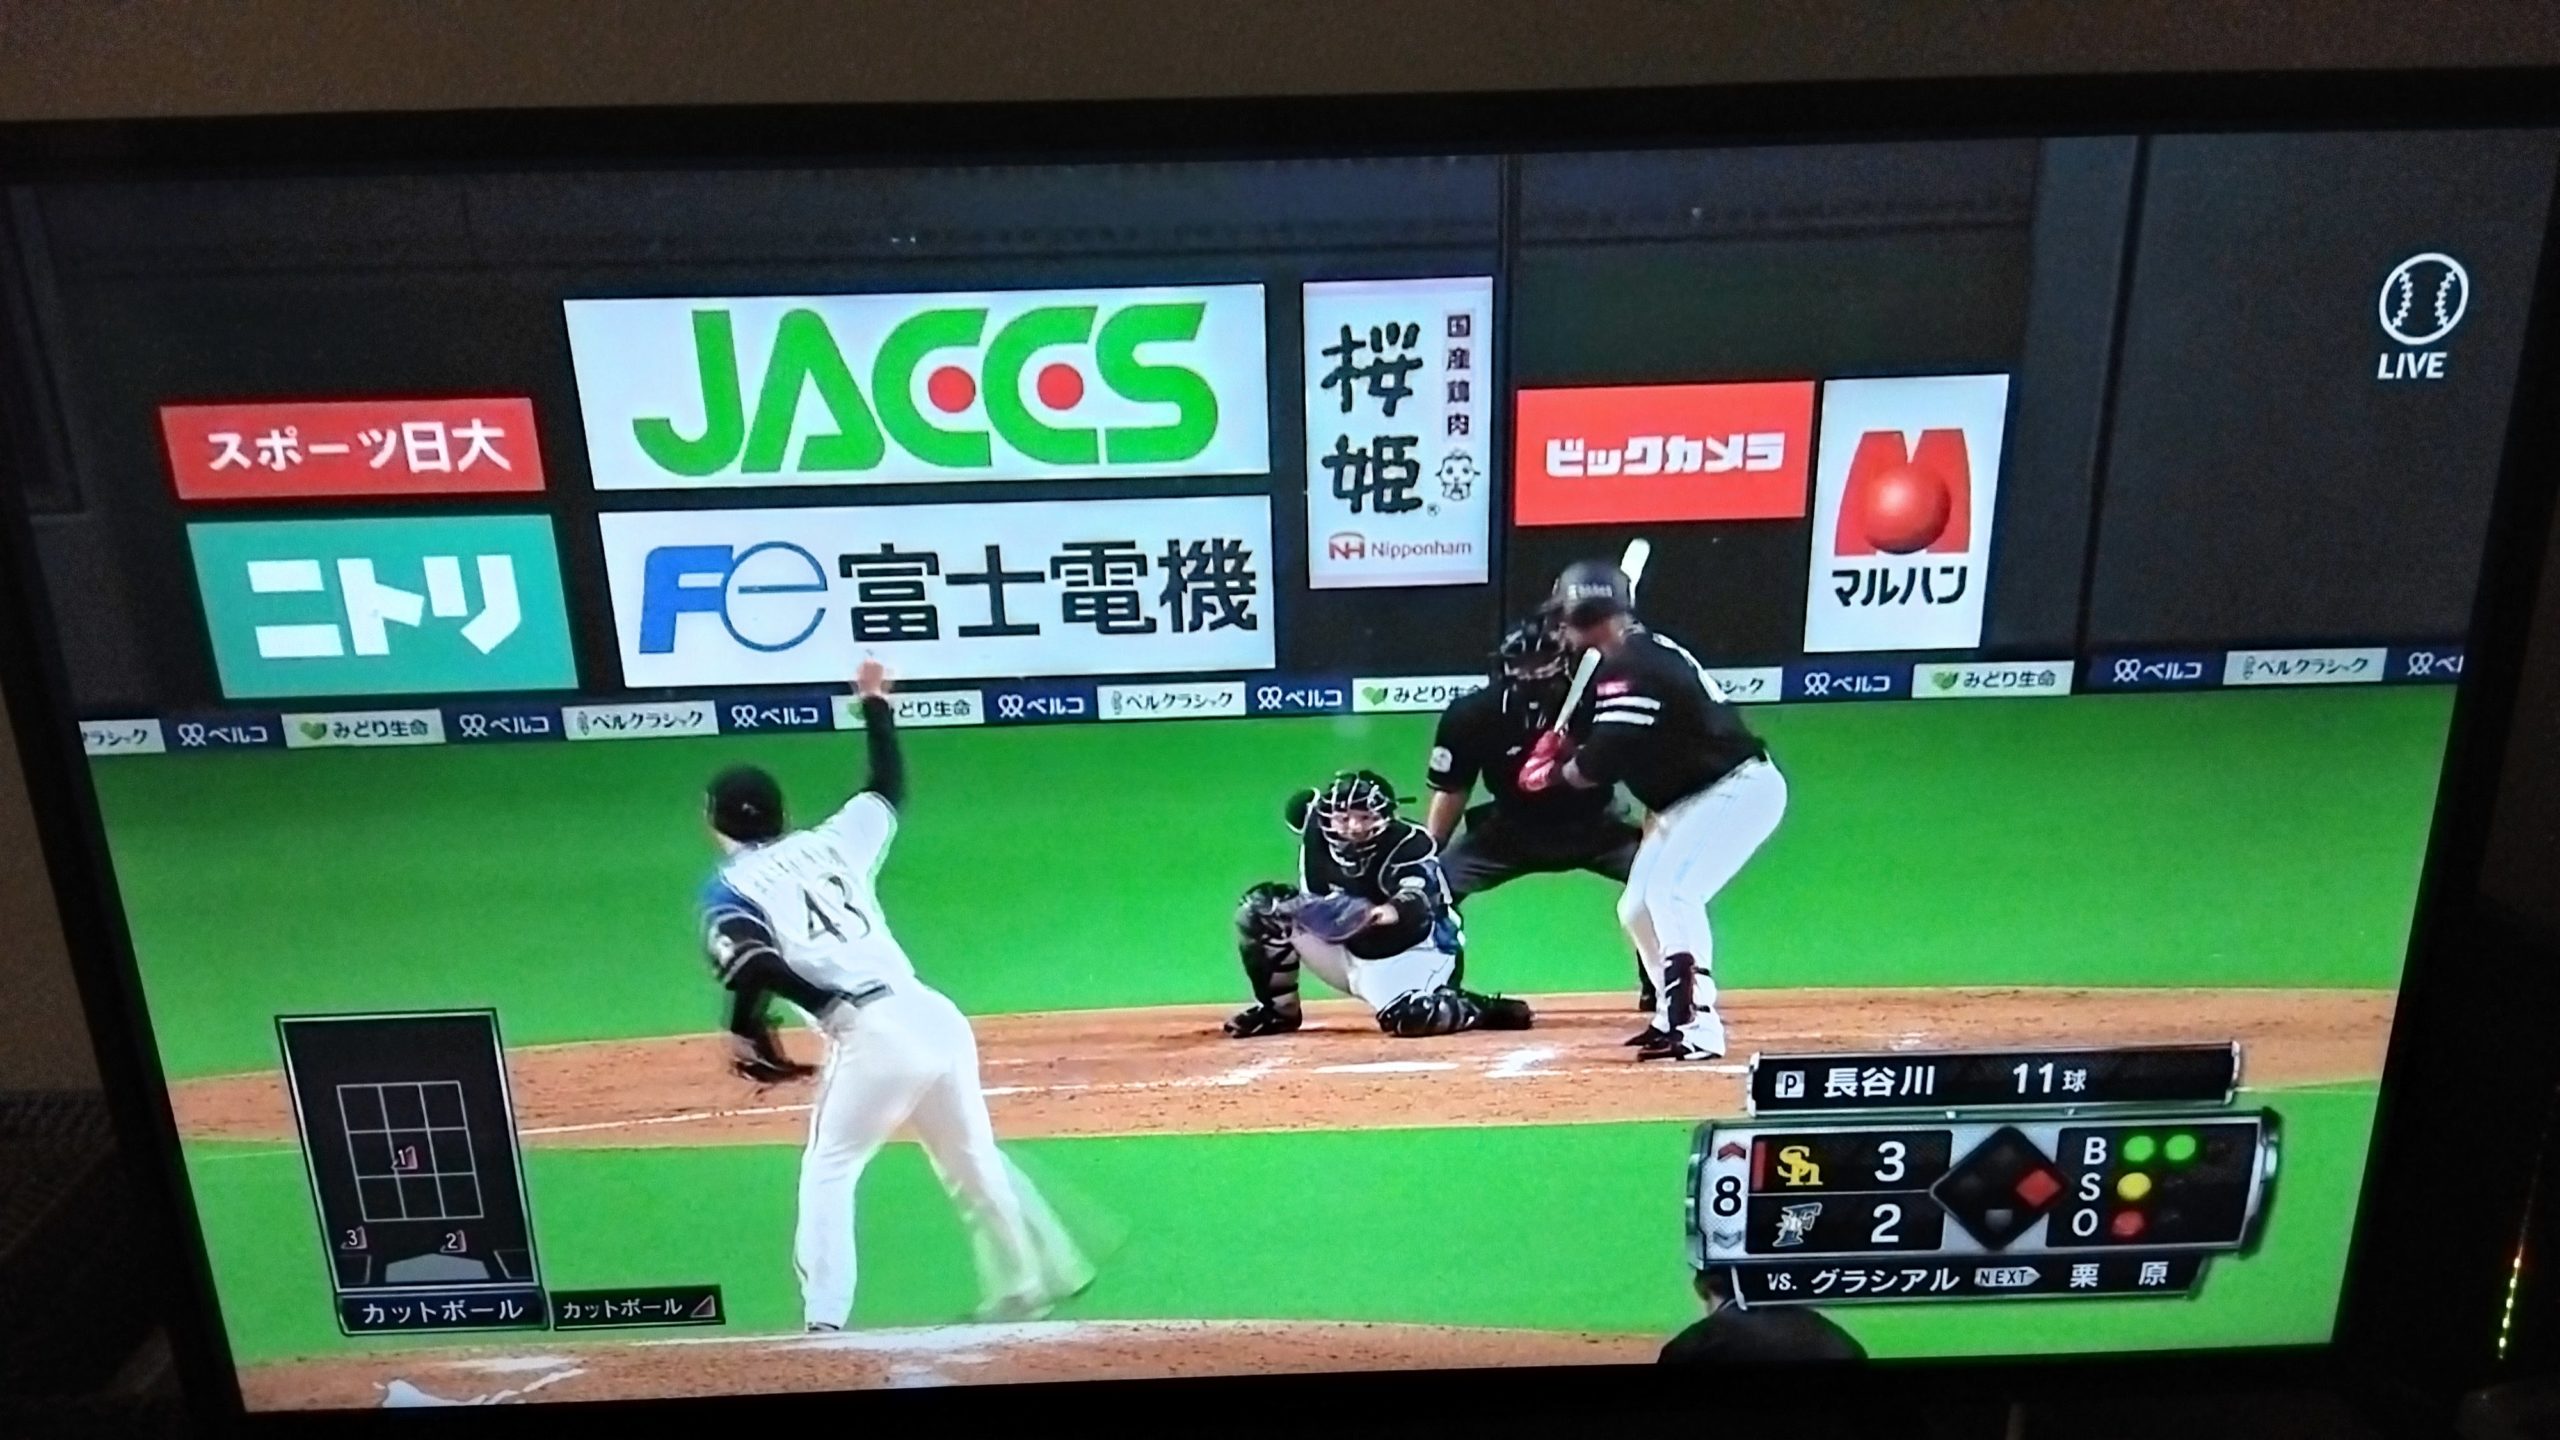 ベースボールLIVEをテレビで見る方法
